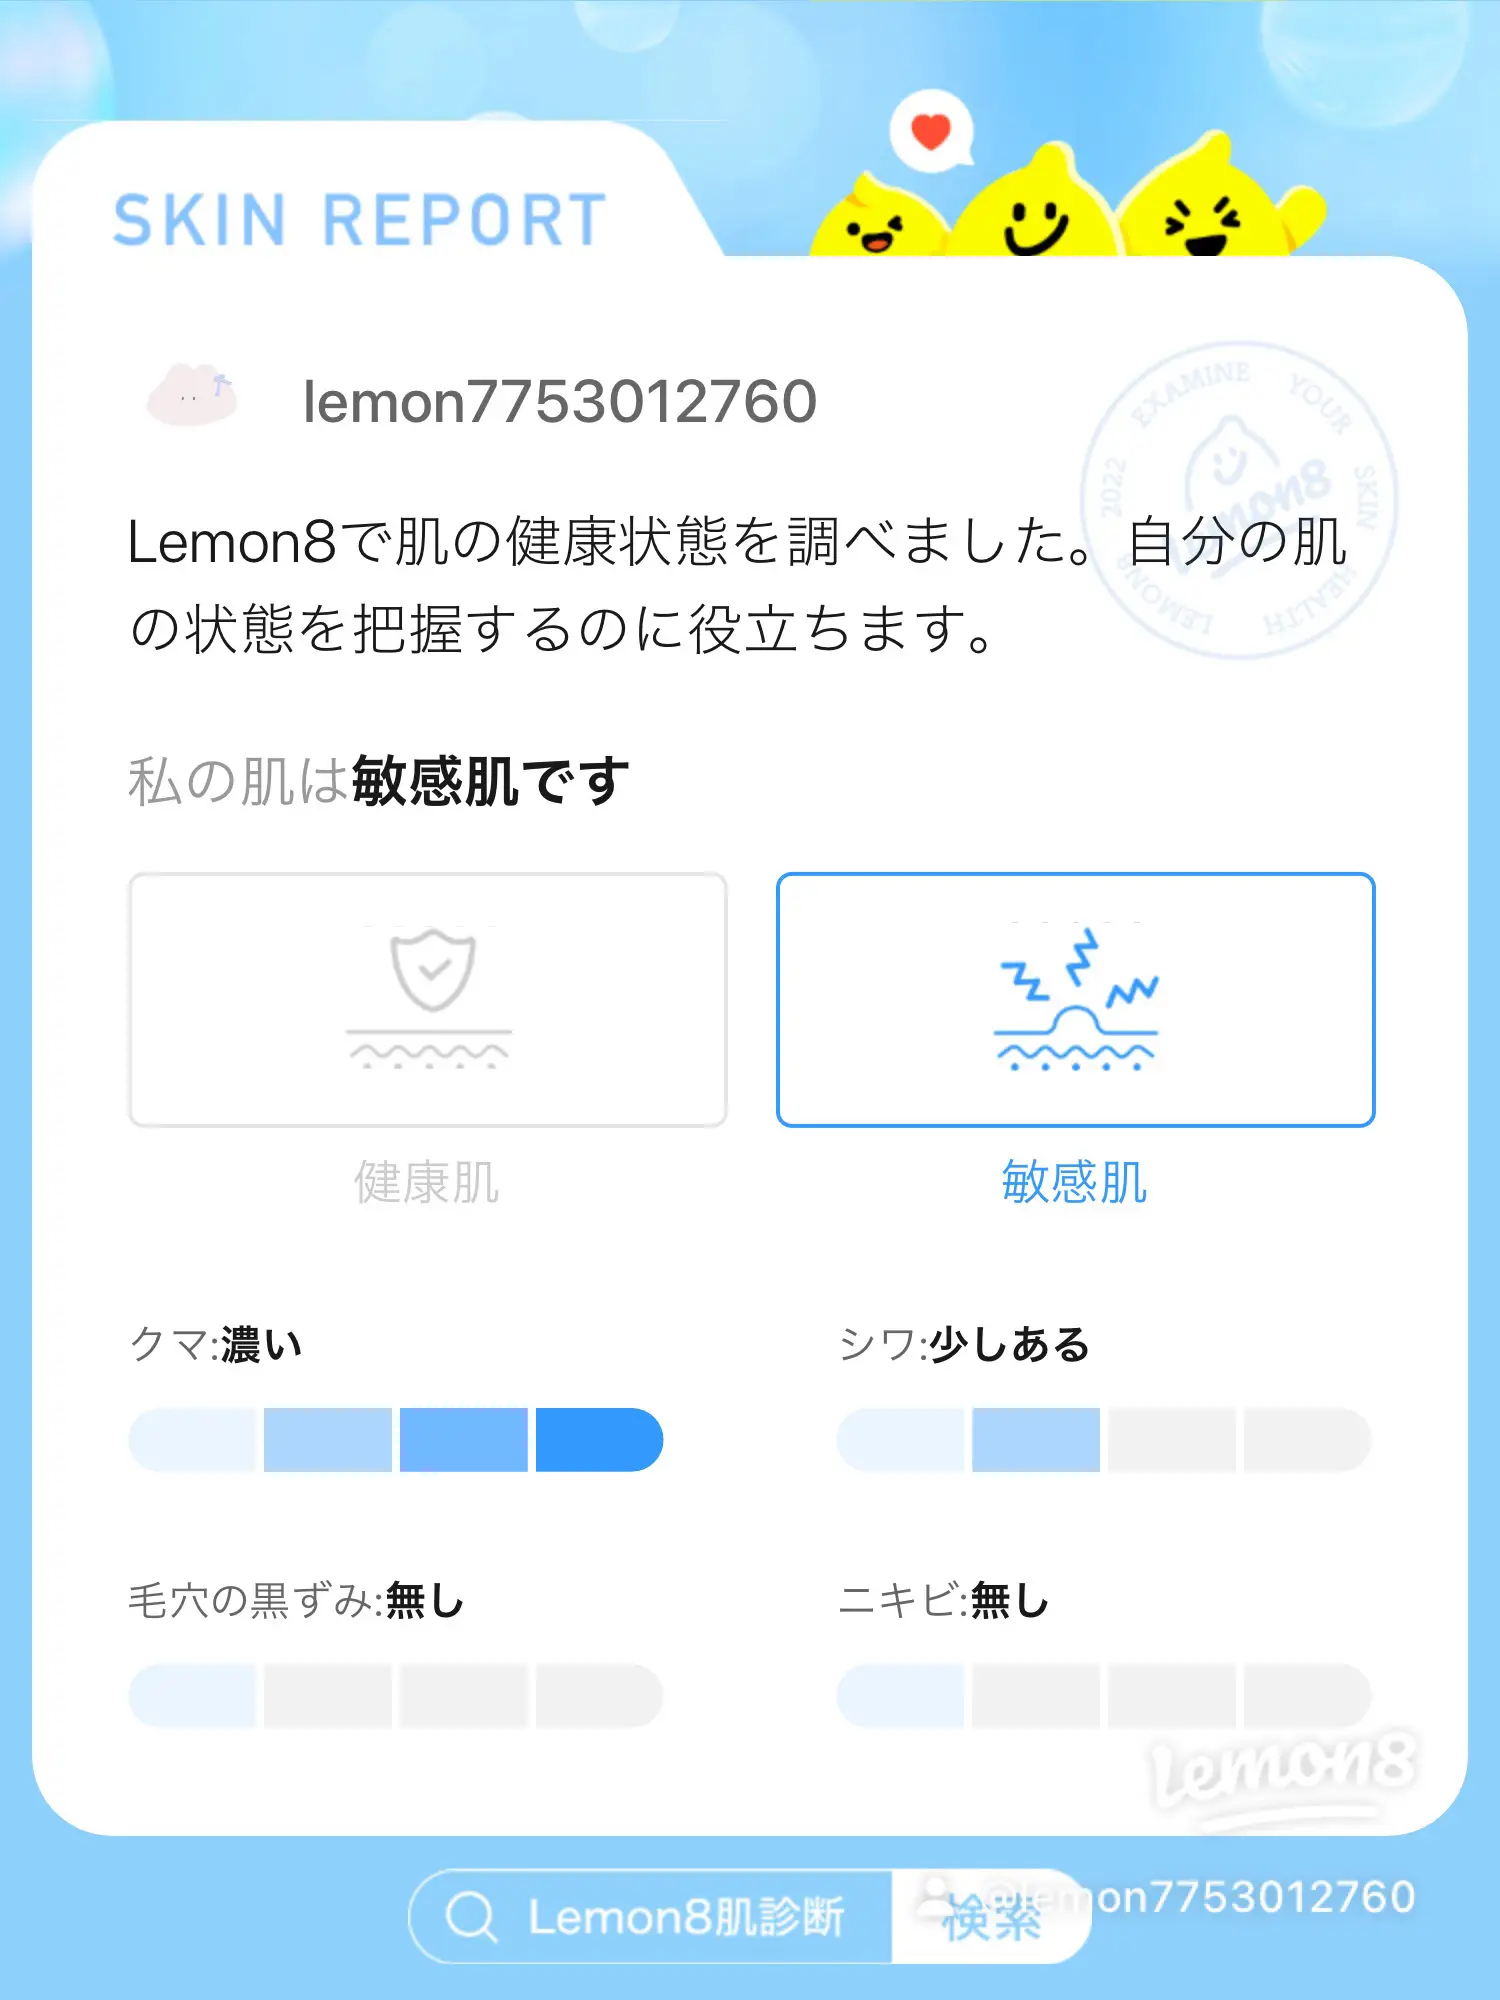 lemon8 肌診断の画像 (3枚目)